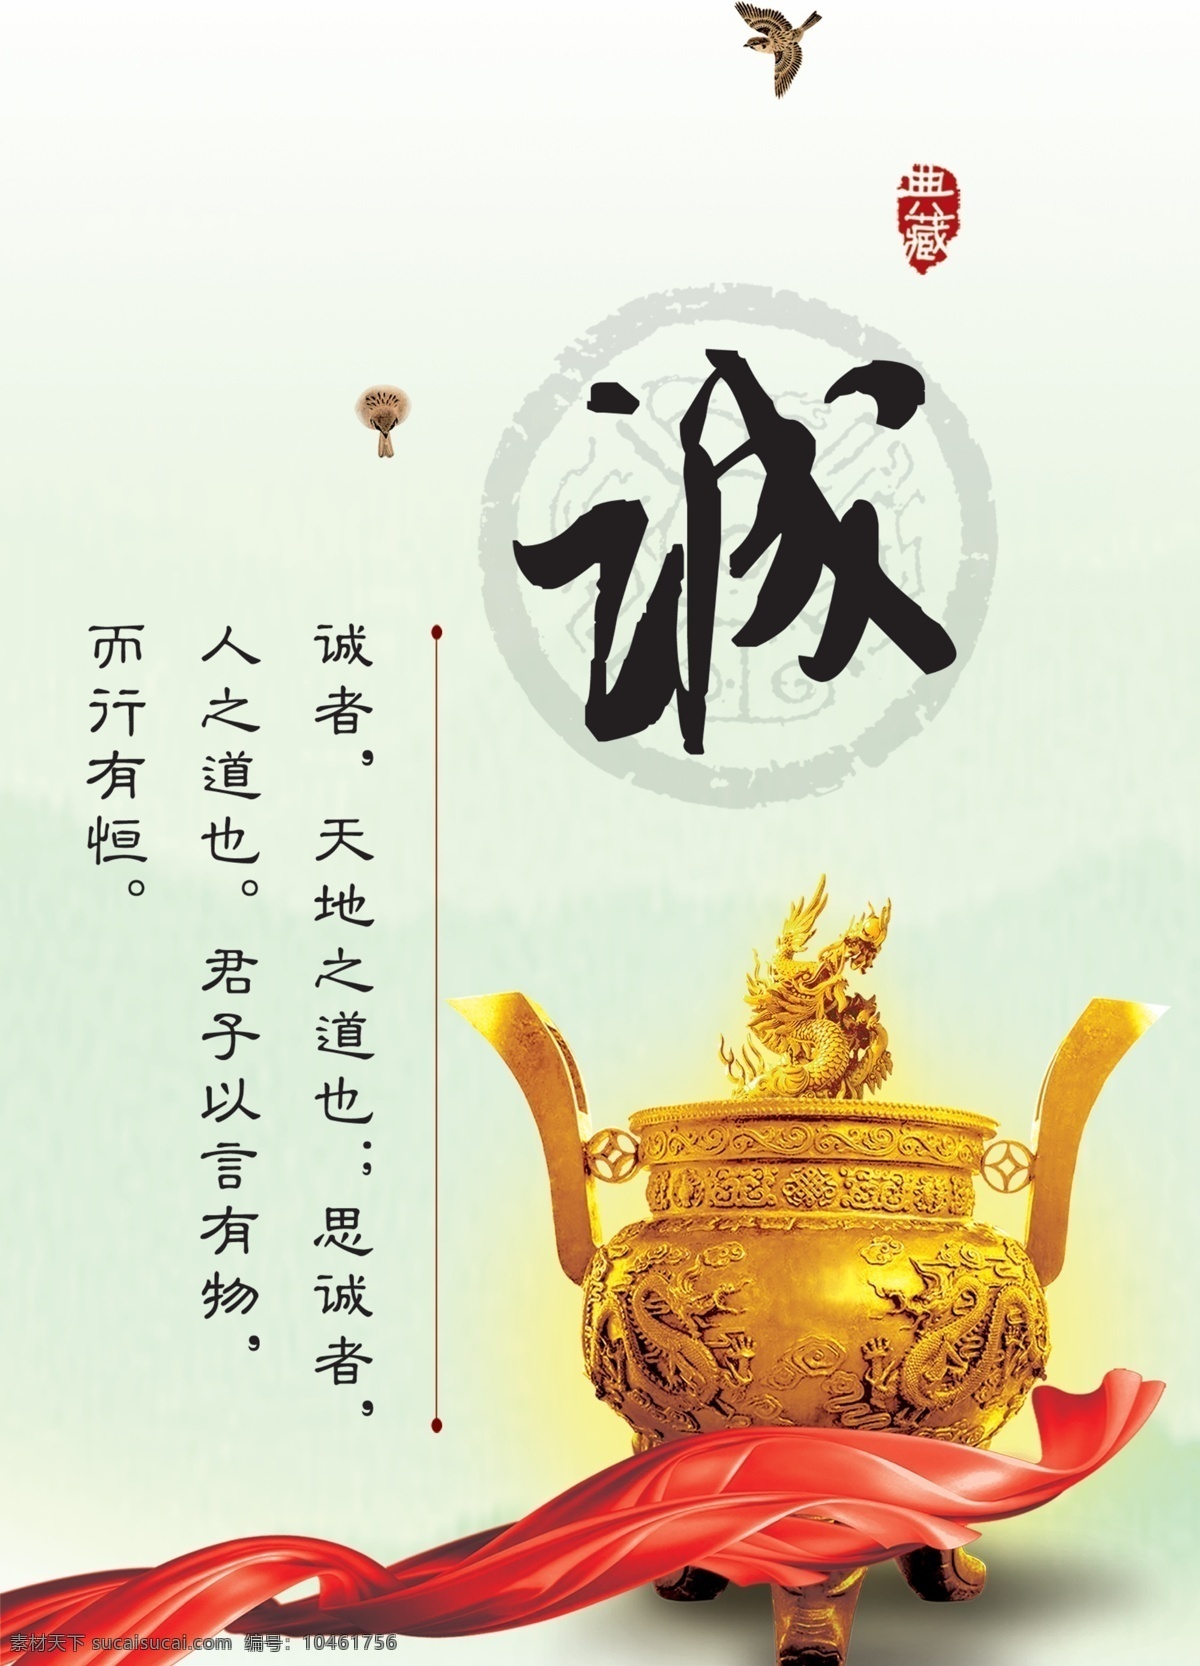 诚海报 中华传统文化 传统文化画册 传统文化宣传 学 国学经典 诚 诚信